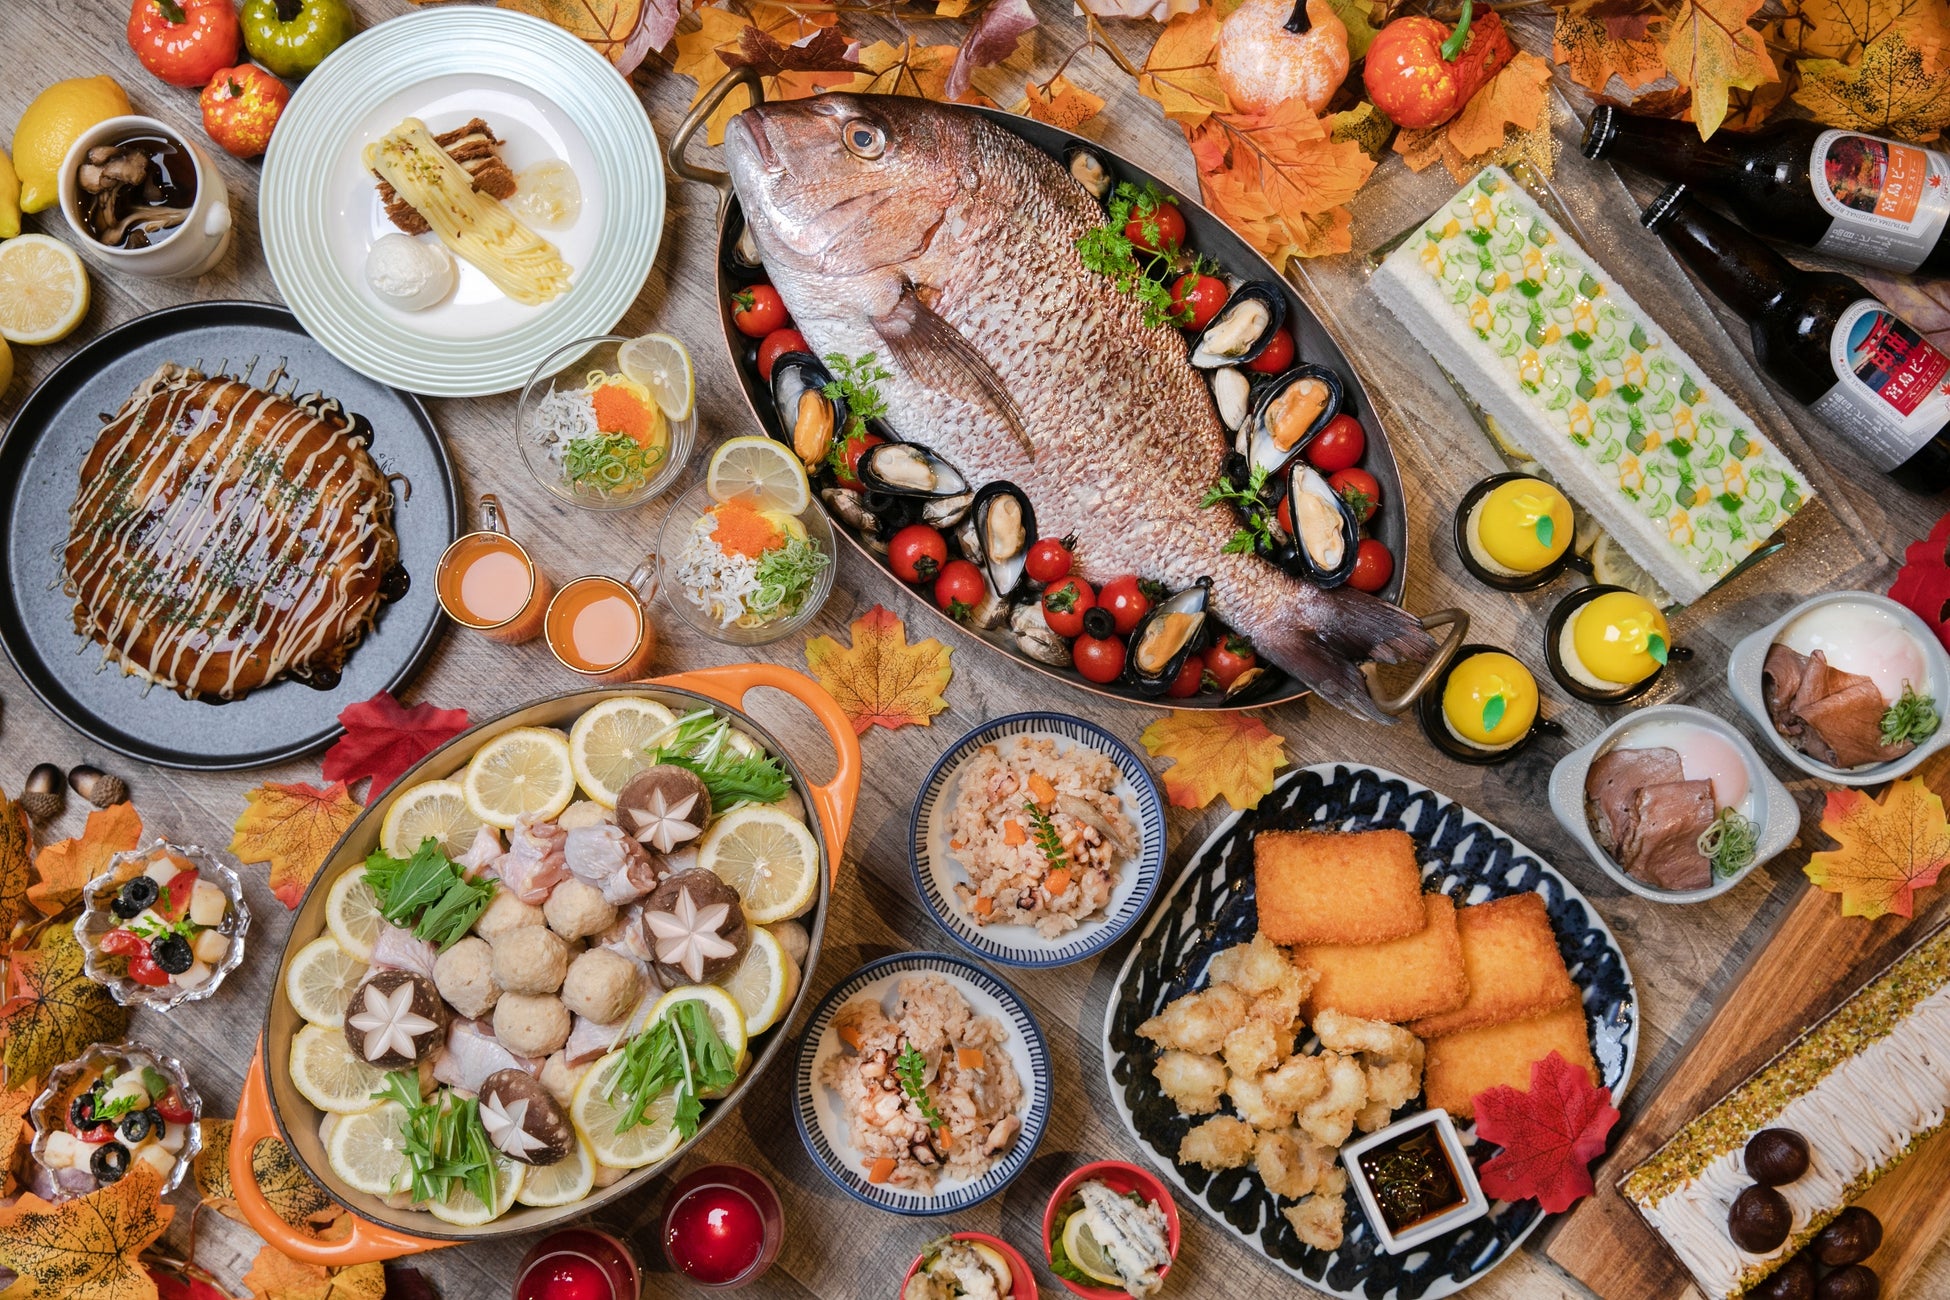 【新横浜プリンスホテル】広島の食文化や選りすぐった食材を使用したメニューを堪能できる「広島・瀬戸内フェア」を開催